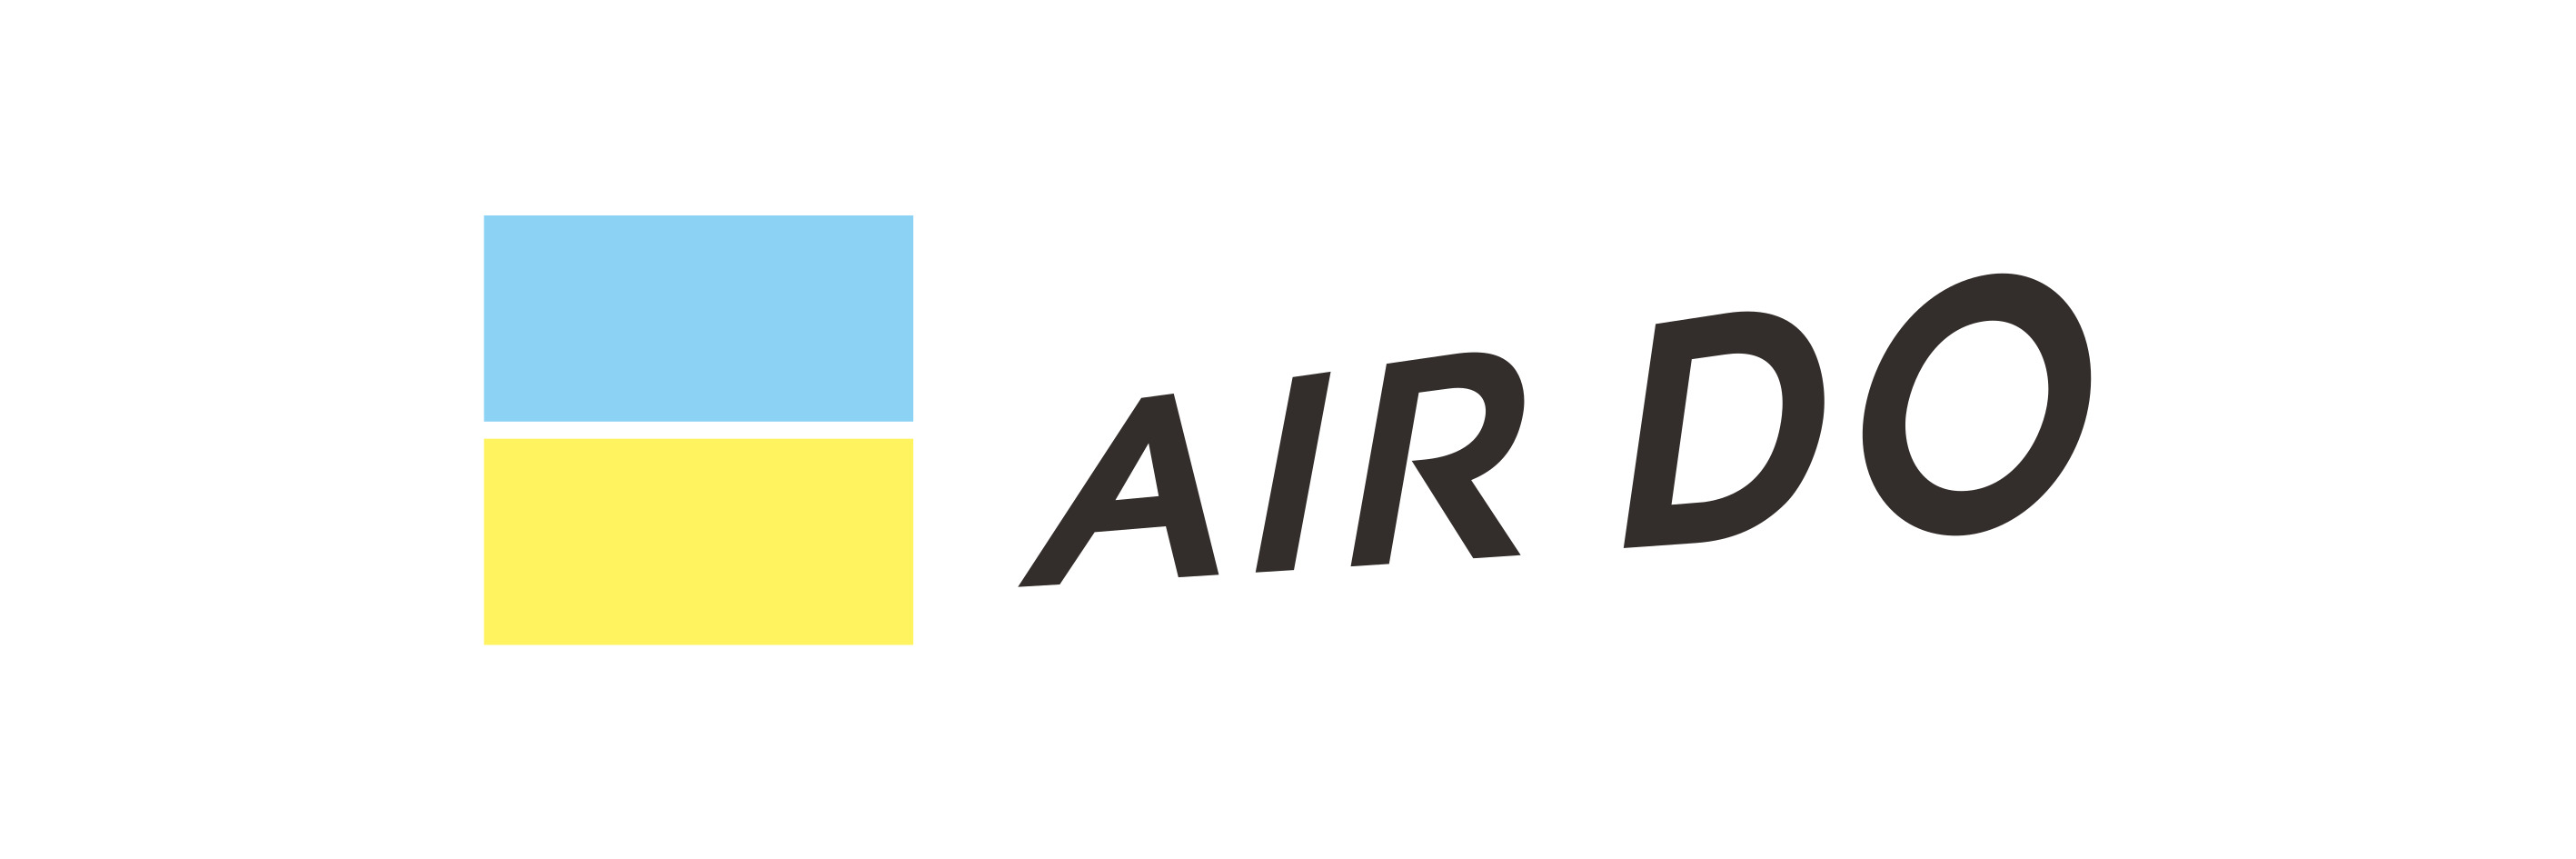 AIRDO Co., Ltd. logo